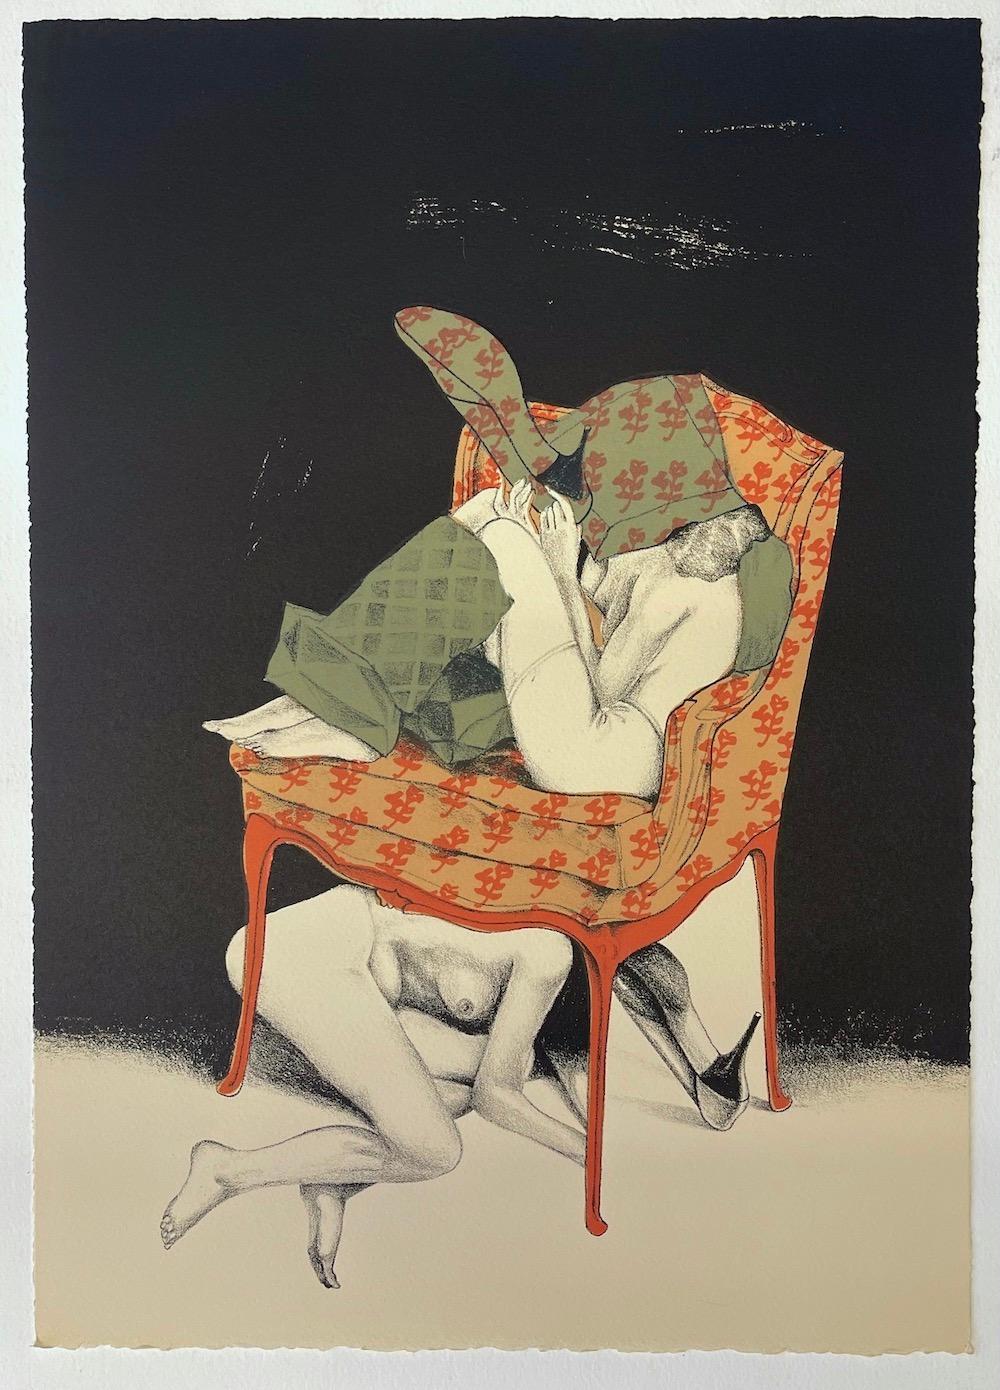  Zwei Akte posieren mit Sessel, handgezeichnete Steinlithographie, Stiletto- Heels mit Absatz (Realismus), Print, von Mel Ramos